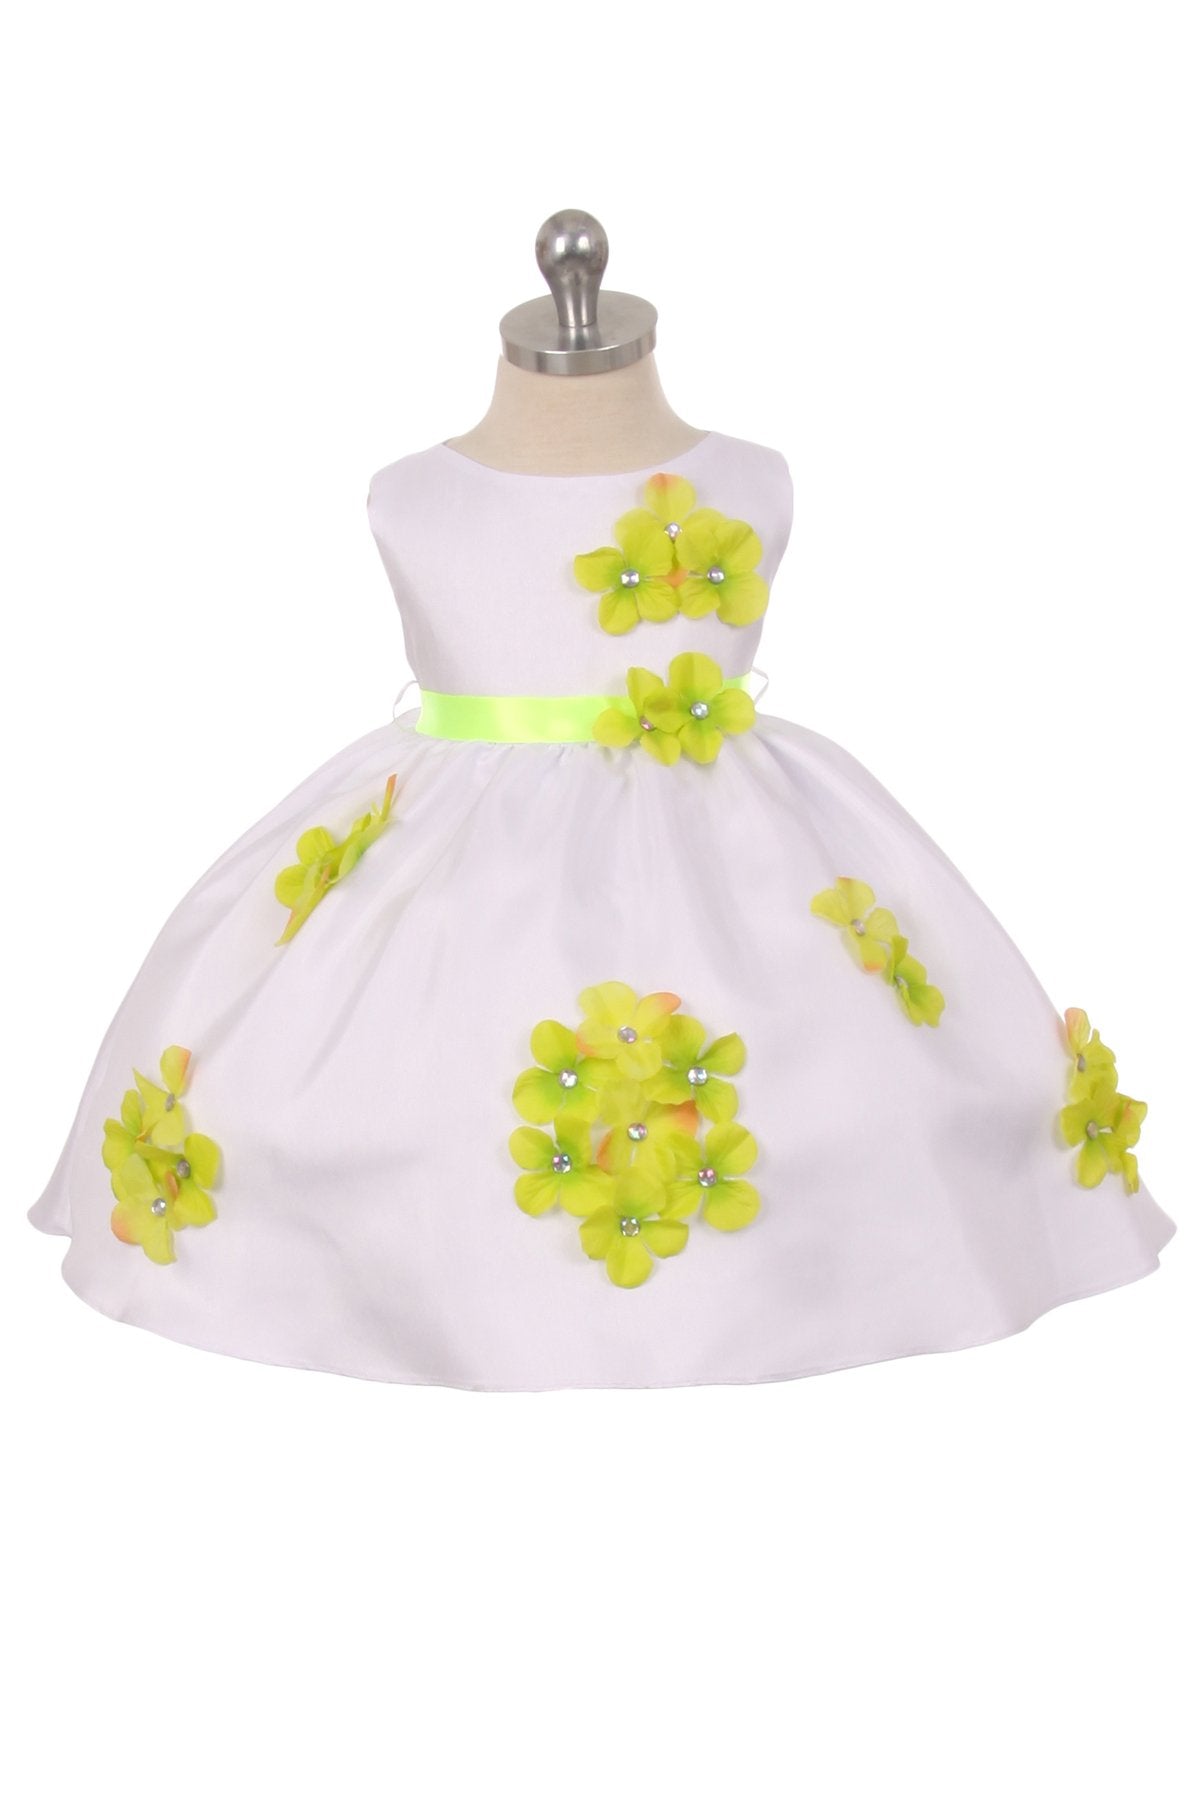 Dress - Shantung Dress Flower Petals Baby Dress